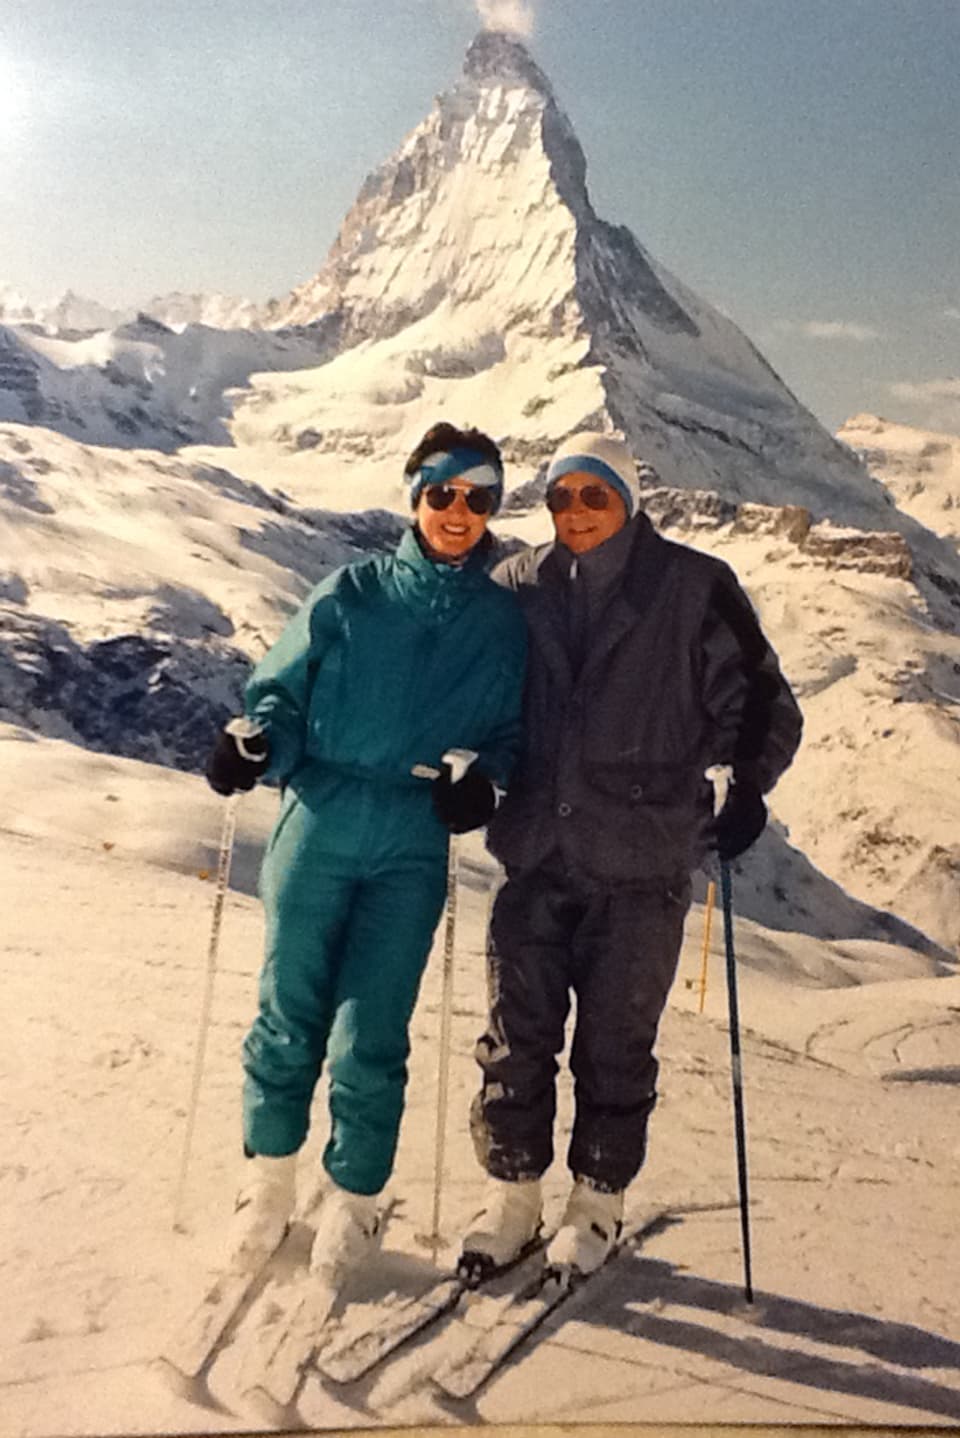 Ein Paar auf Skis. Hinten steht das Matterhorn.